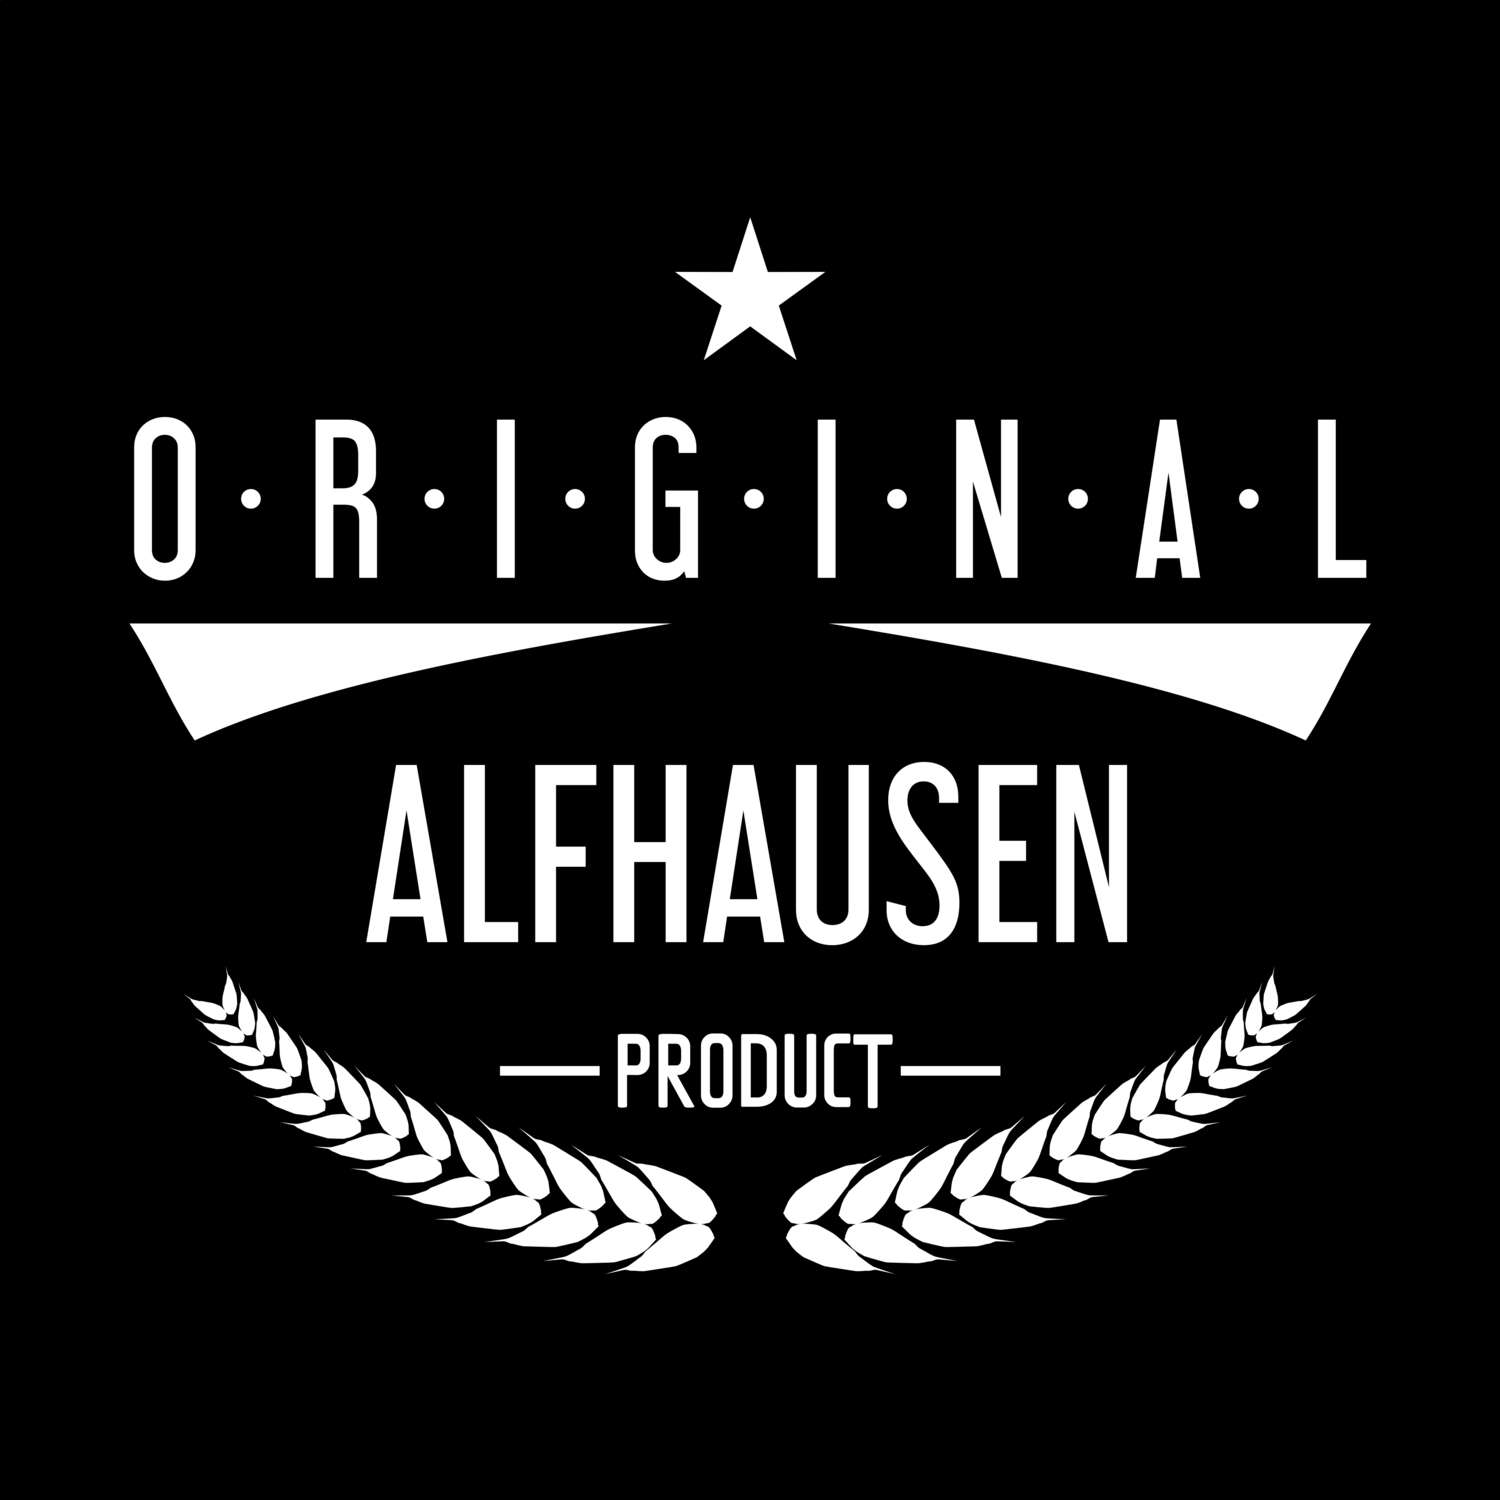 Alfhausen T-Shirt »Original Product«